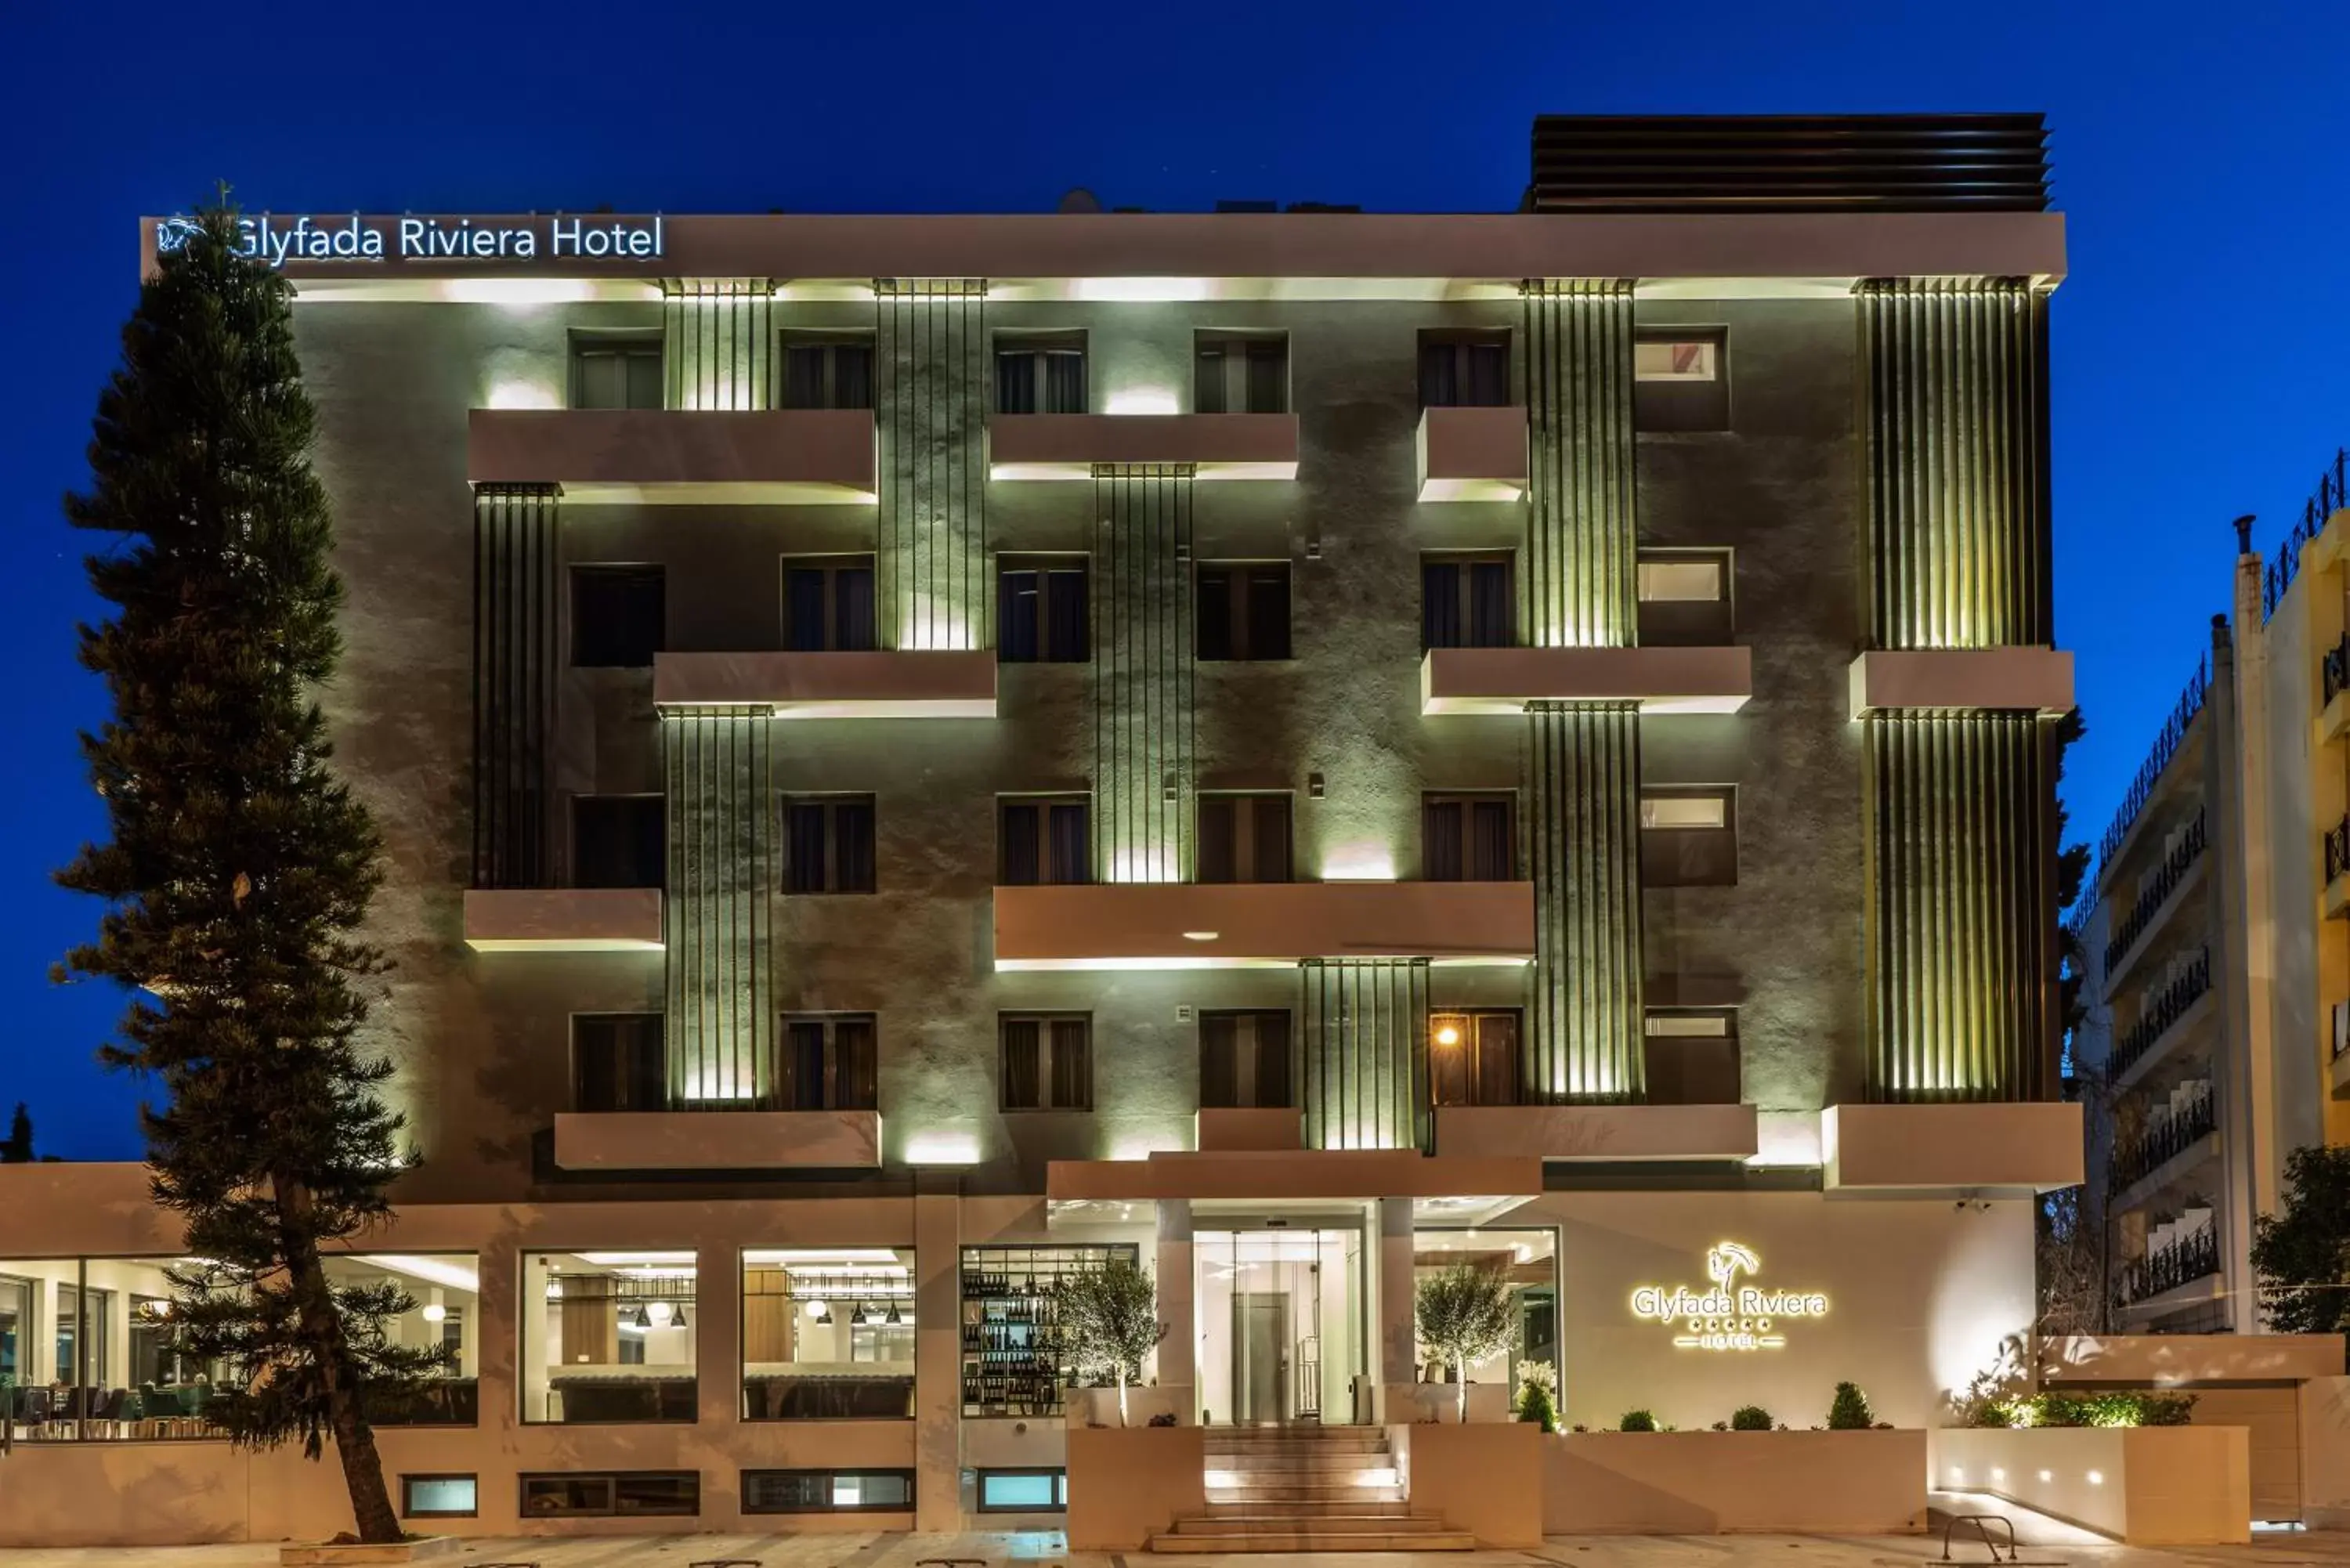 Facade/entrance, Property Building in Glyfada Riviera Hotel